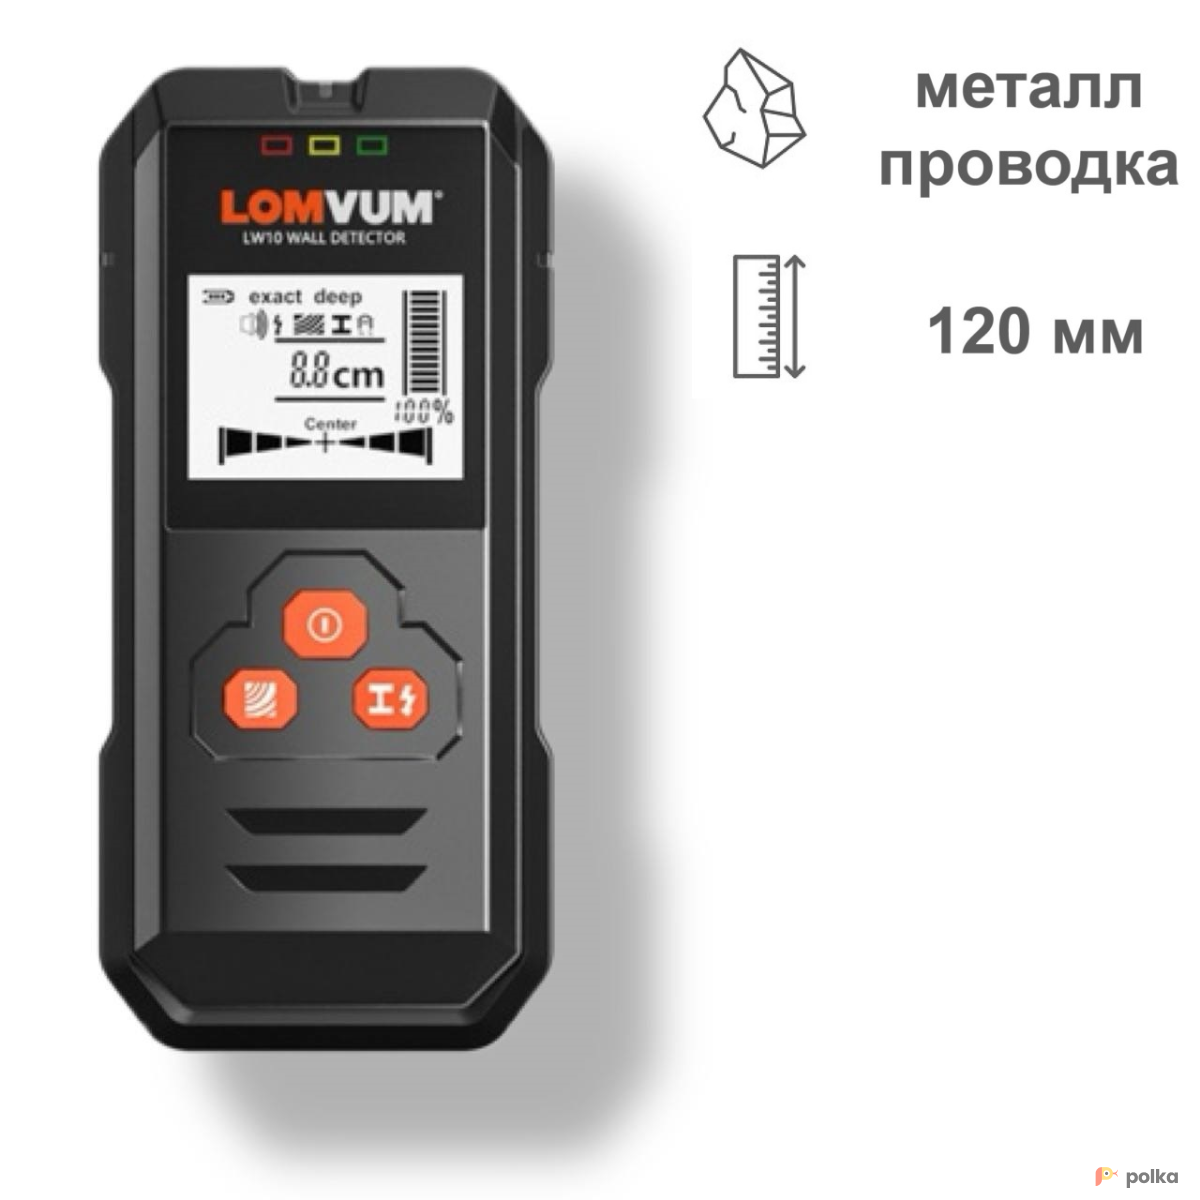 Возьмите детектор скрытой проводки LOMVUM LW10 напрокат (Фото 2) в Москве